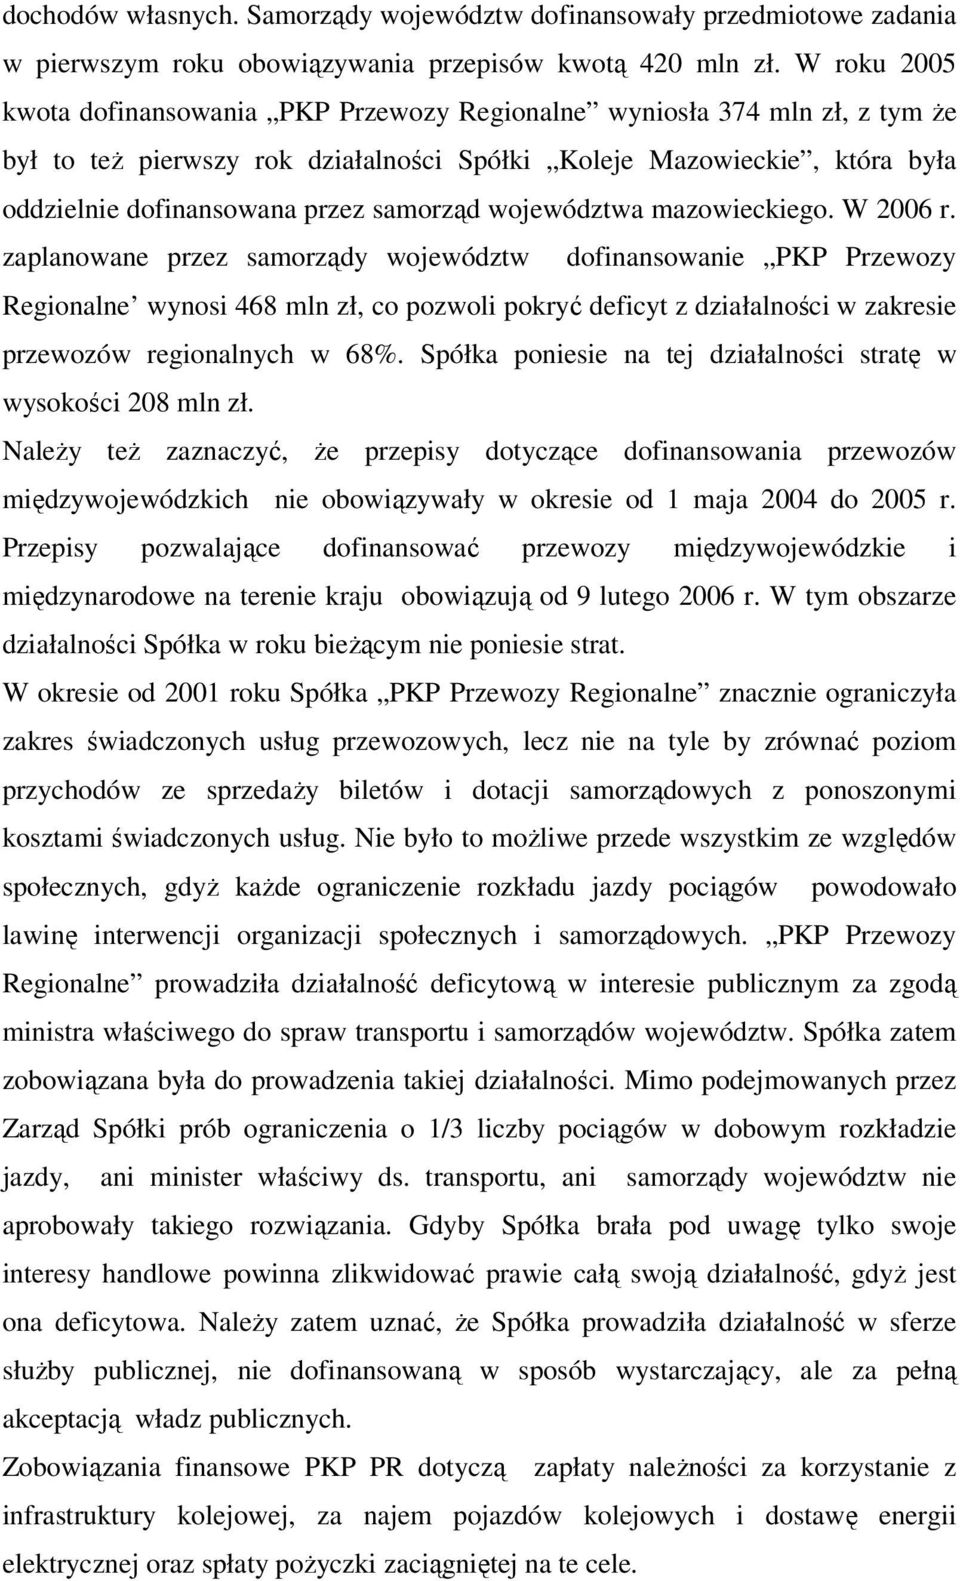 samorząd województwa mazowieckiego. W 2006 r.